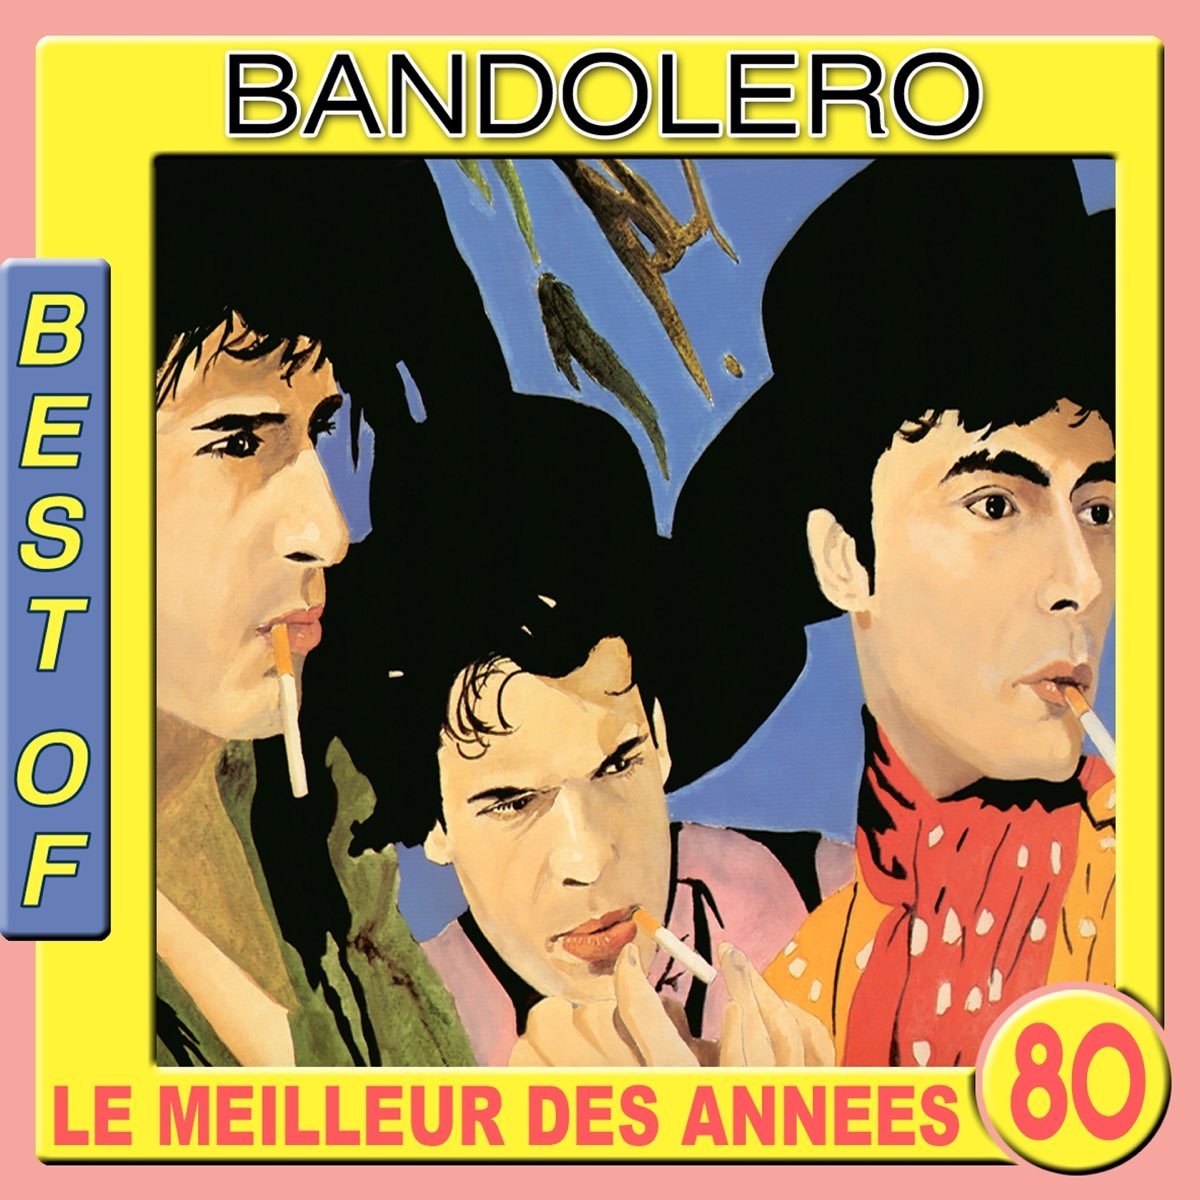 Bandolero. Bandolero Paris Latino. Bandolero album. Bandolero Team.